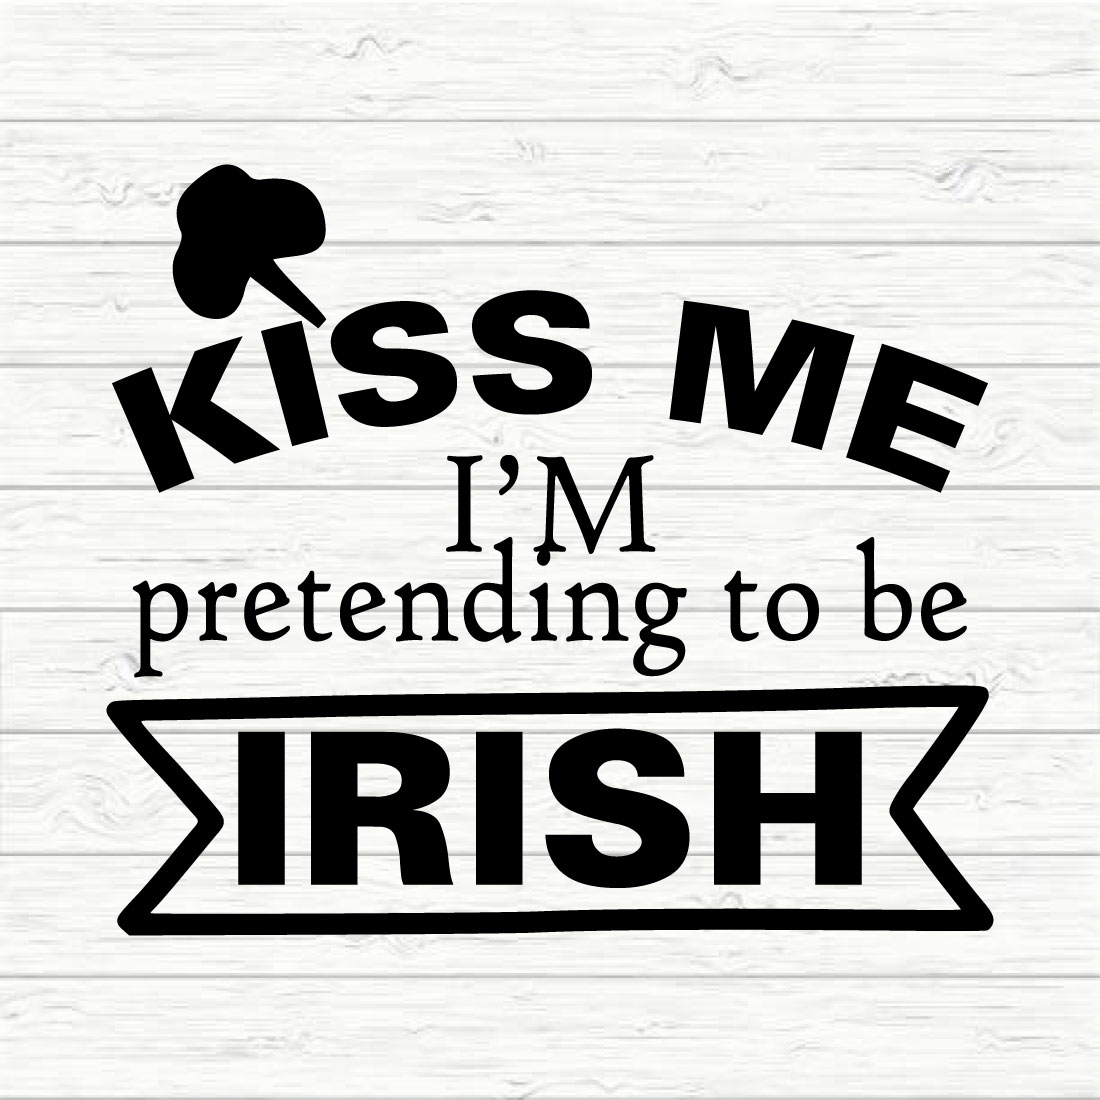 Kiss Me I'm Pretending To Be Irish cover image.